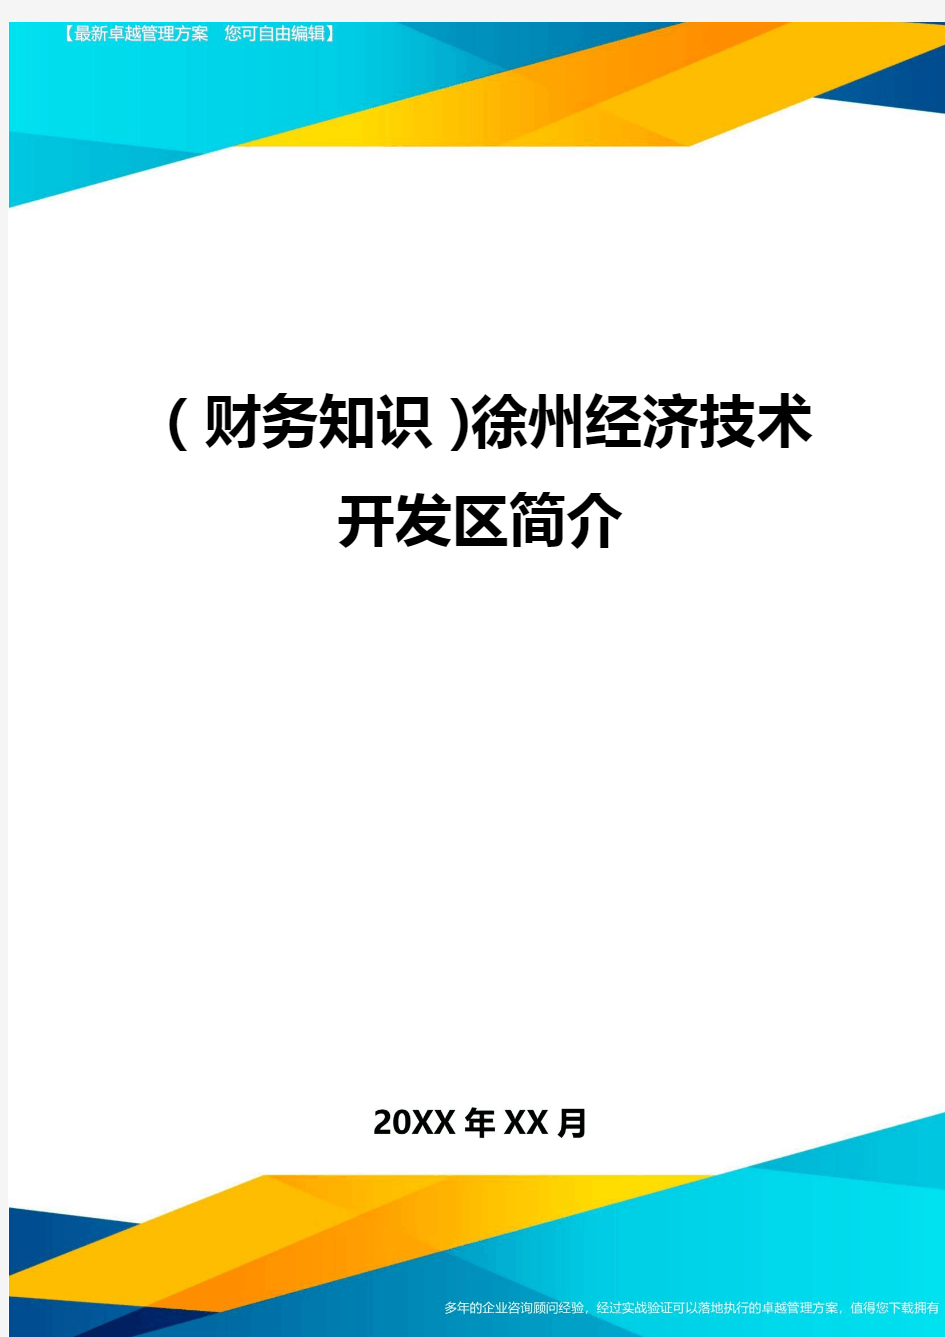 (财务知识)徐州经济技术开发区简介最全版